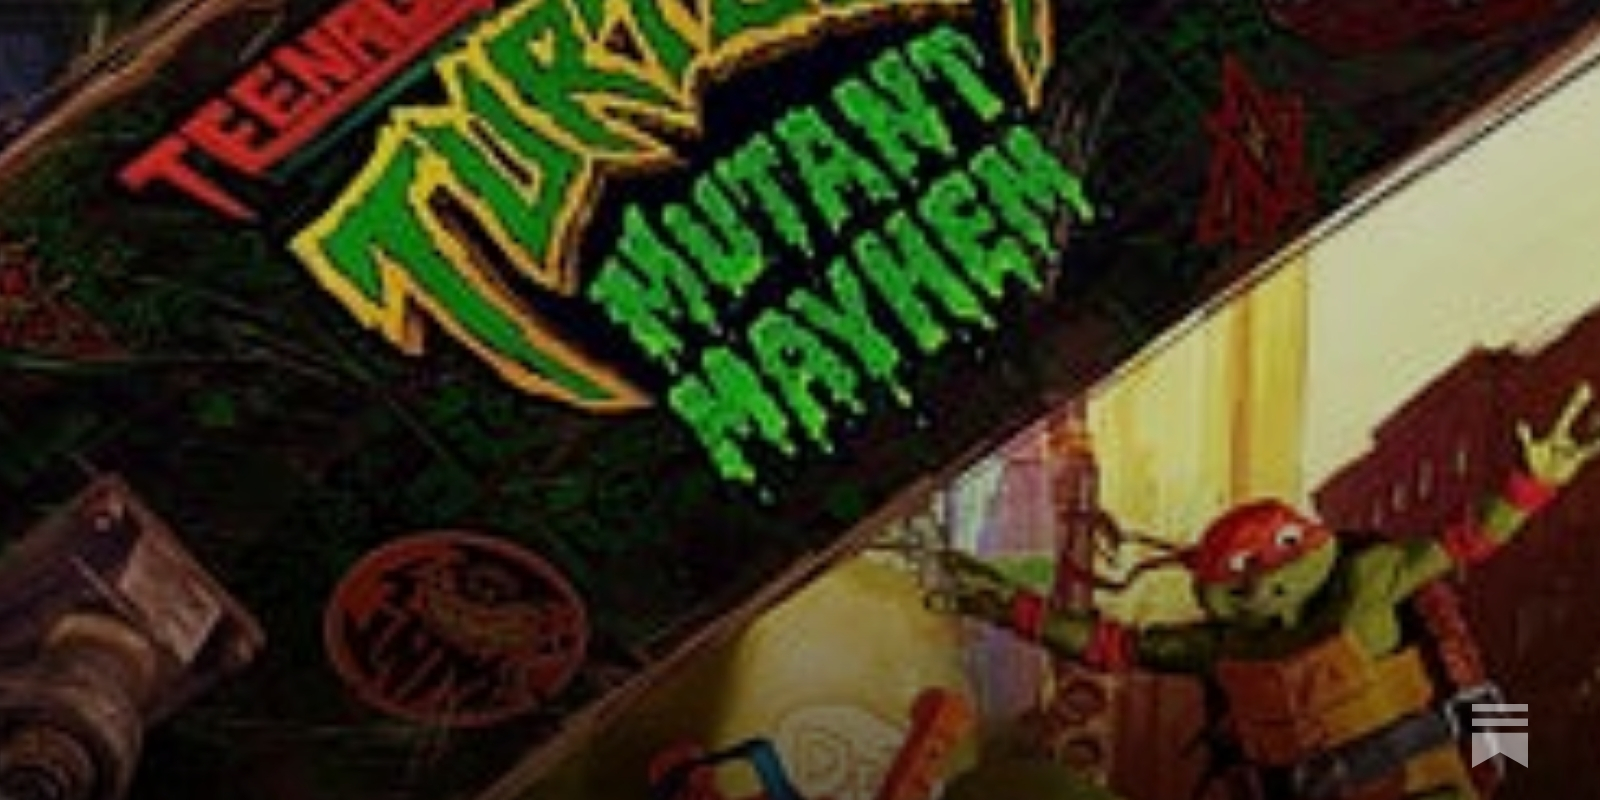 Teenage Mutant Ninja Turtles: Mutant Mayhem' Screenplay: Read